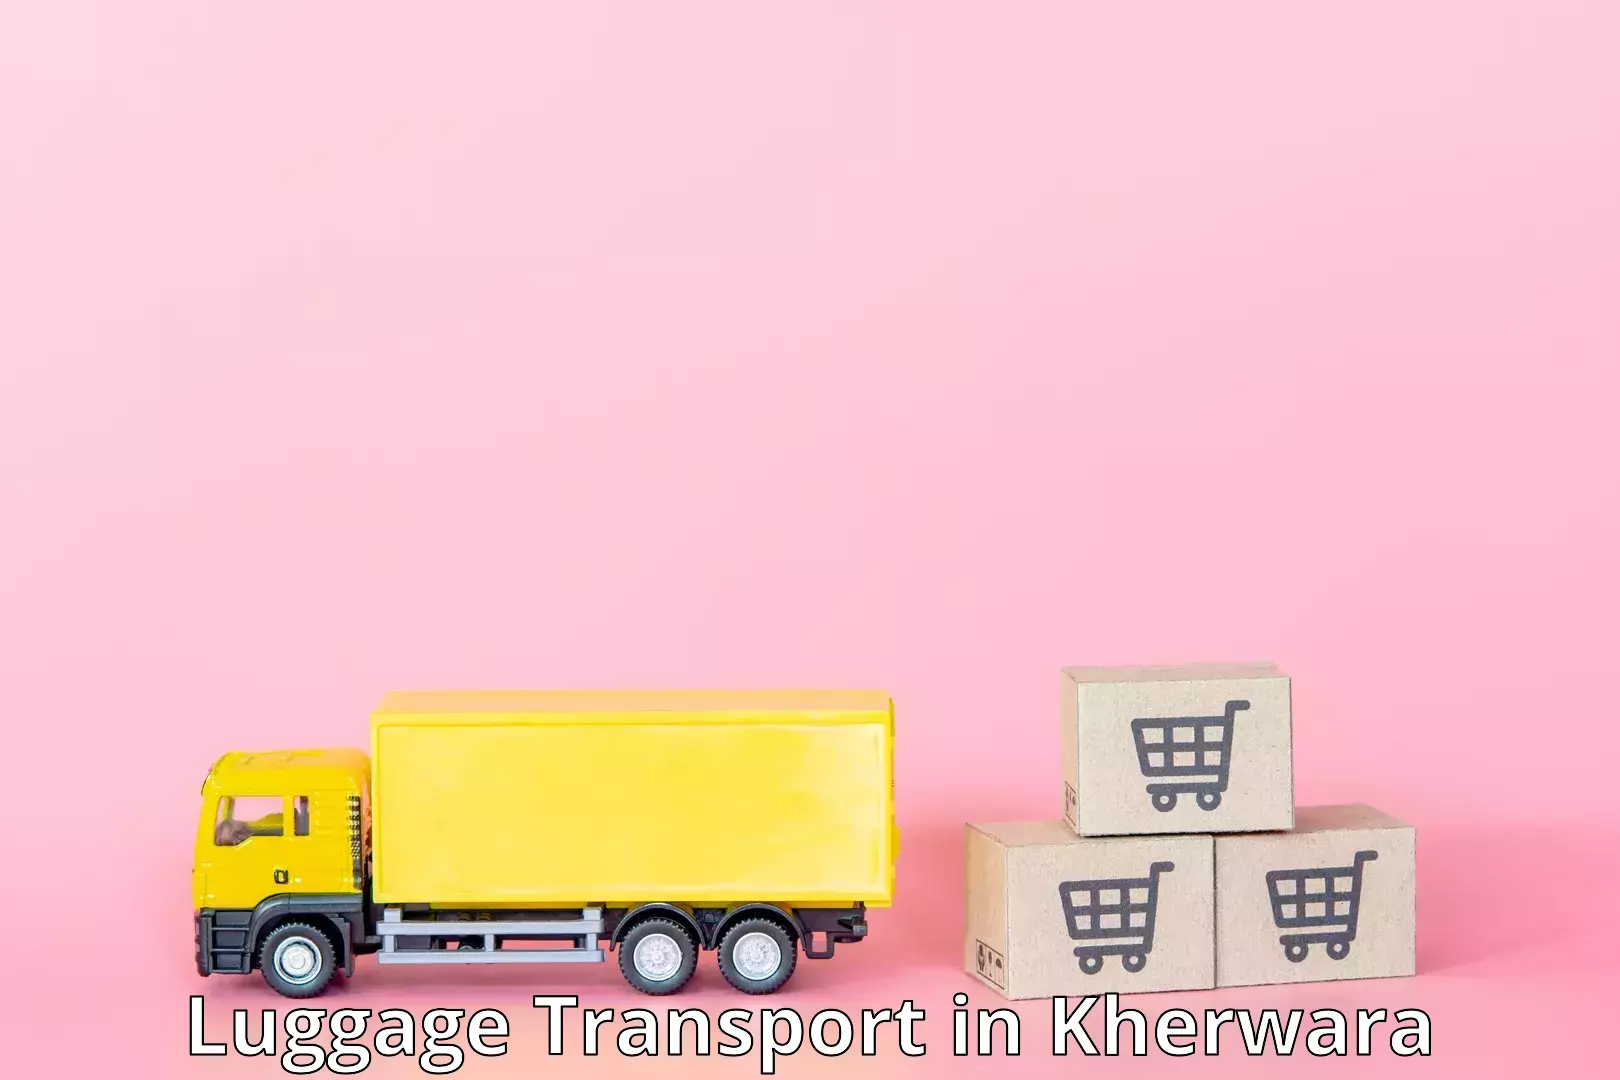 Luggage transport pricing in Kherwara